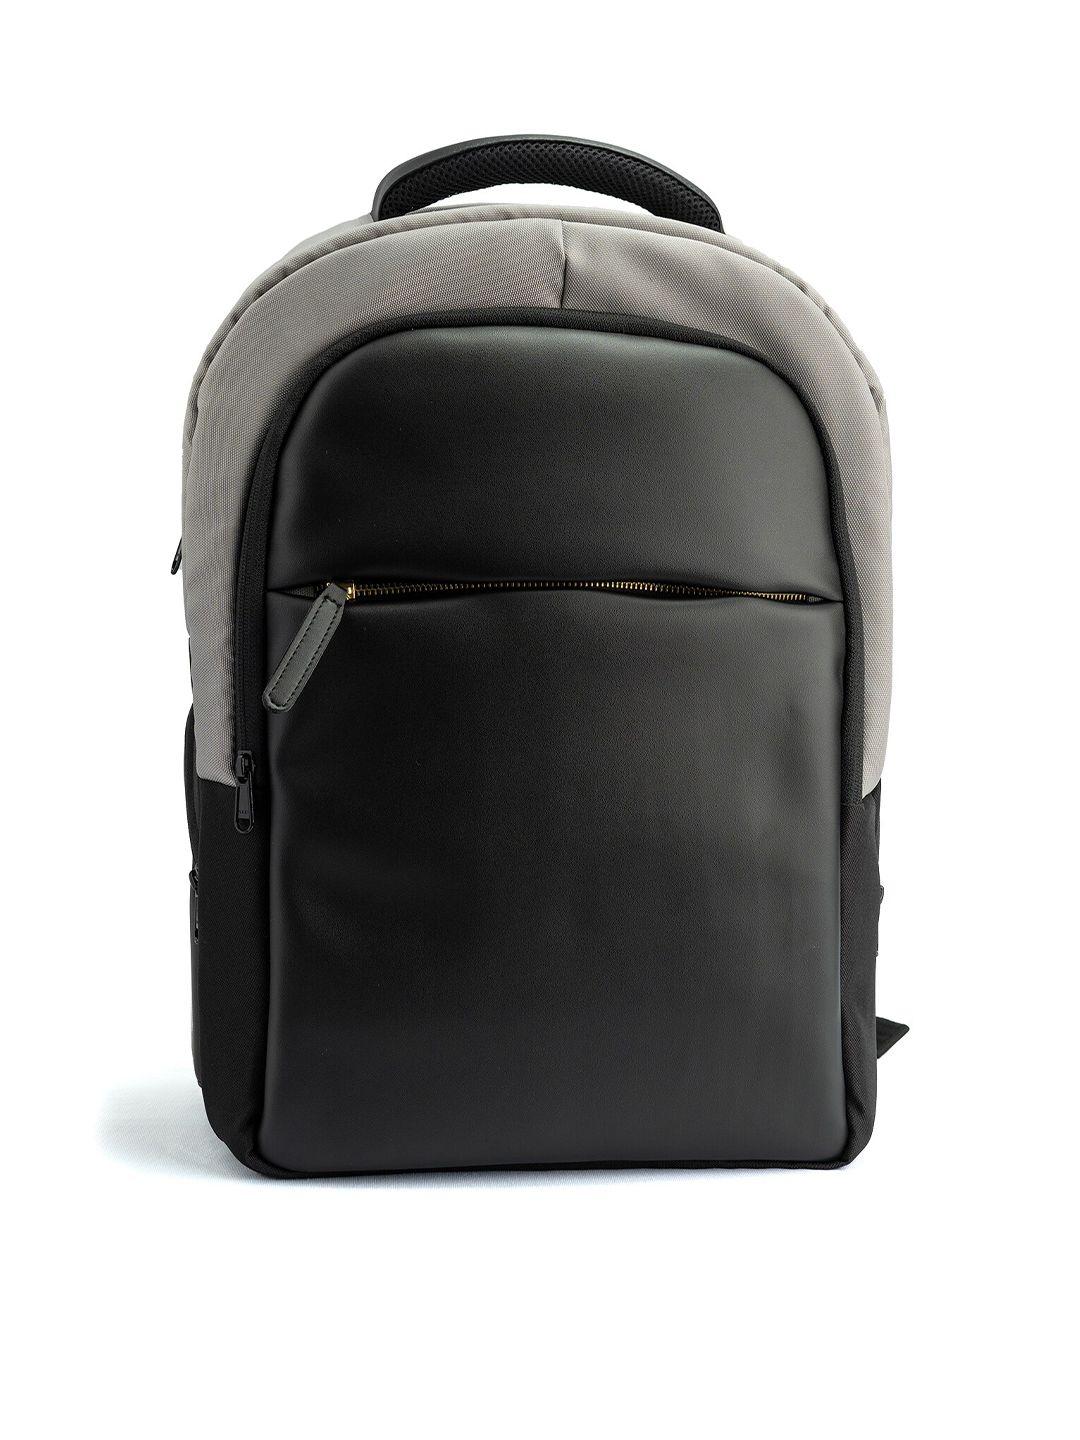 rashki unisex grey & black backpack with usb charging port